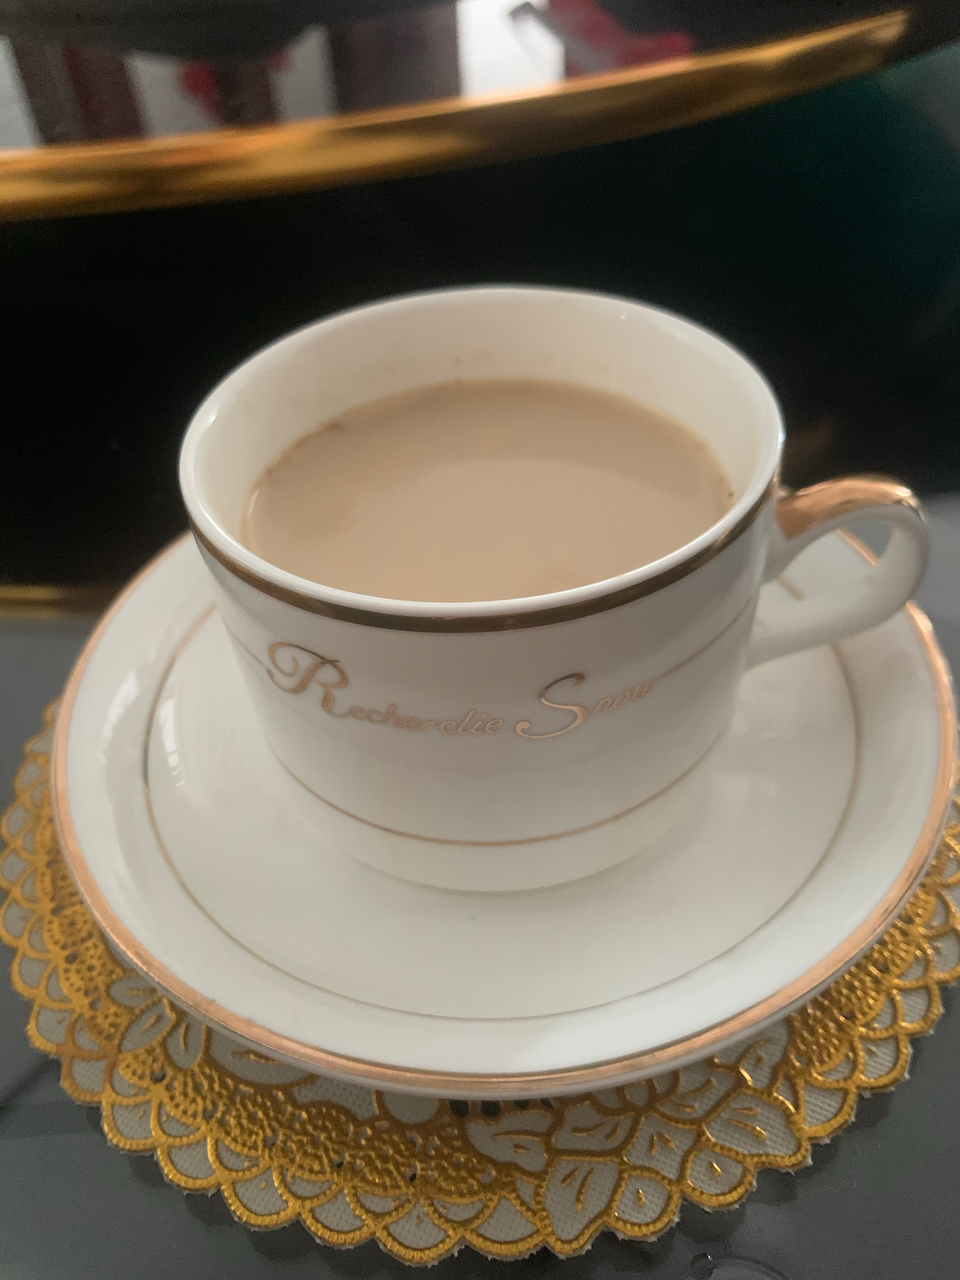 印度马萨拉奶茶 Masala Chai